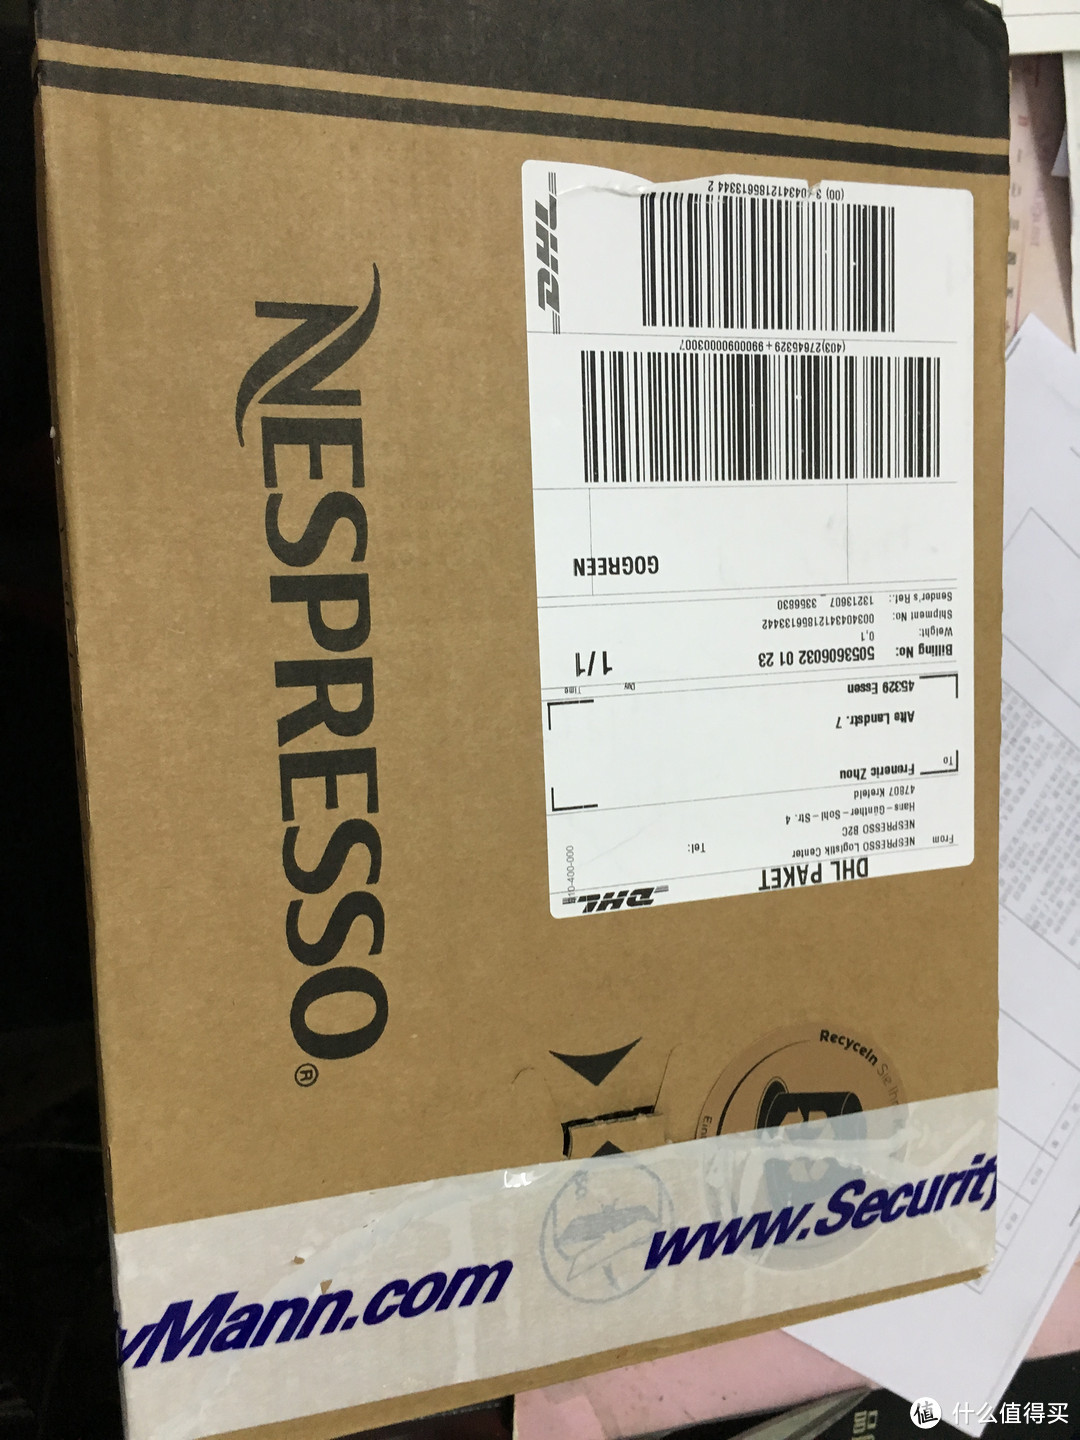 德淘 Nestlé 雀巢 nespresso 胶囊咖啡机 免费胶囊申请小攻略